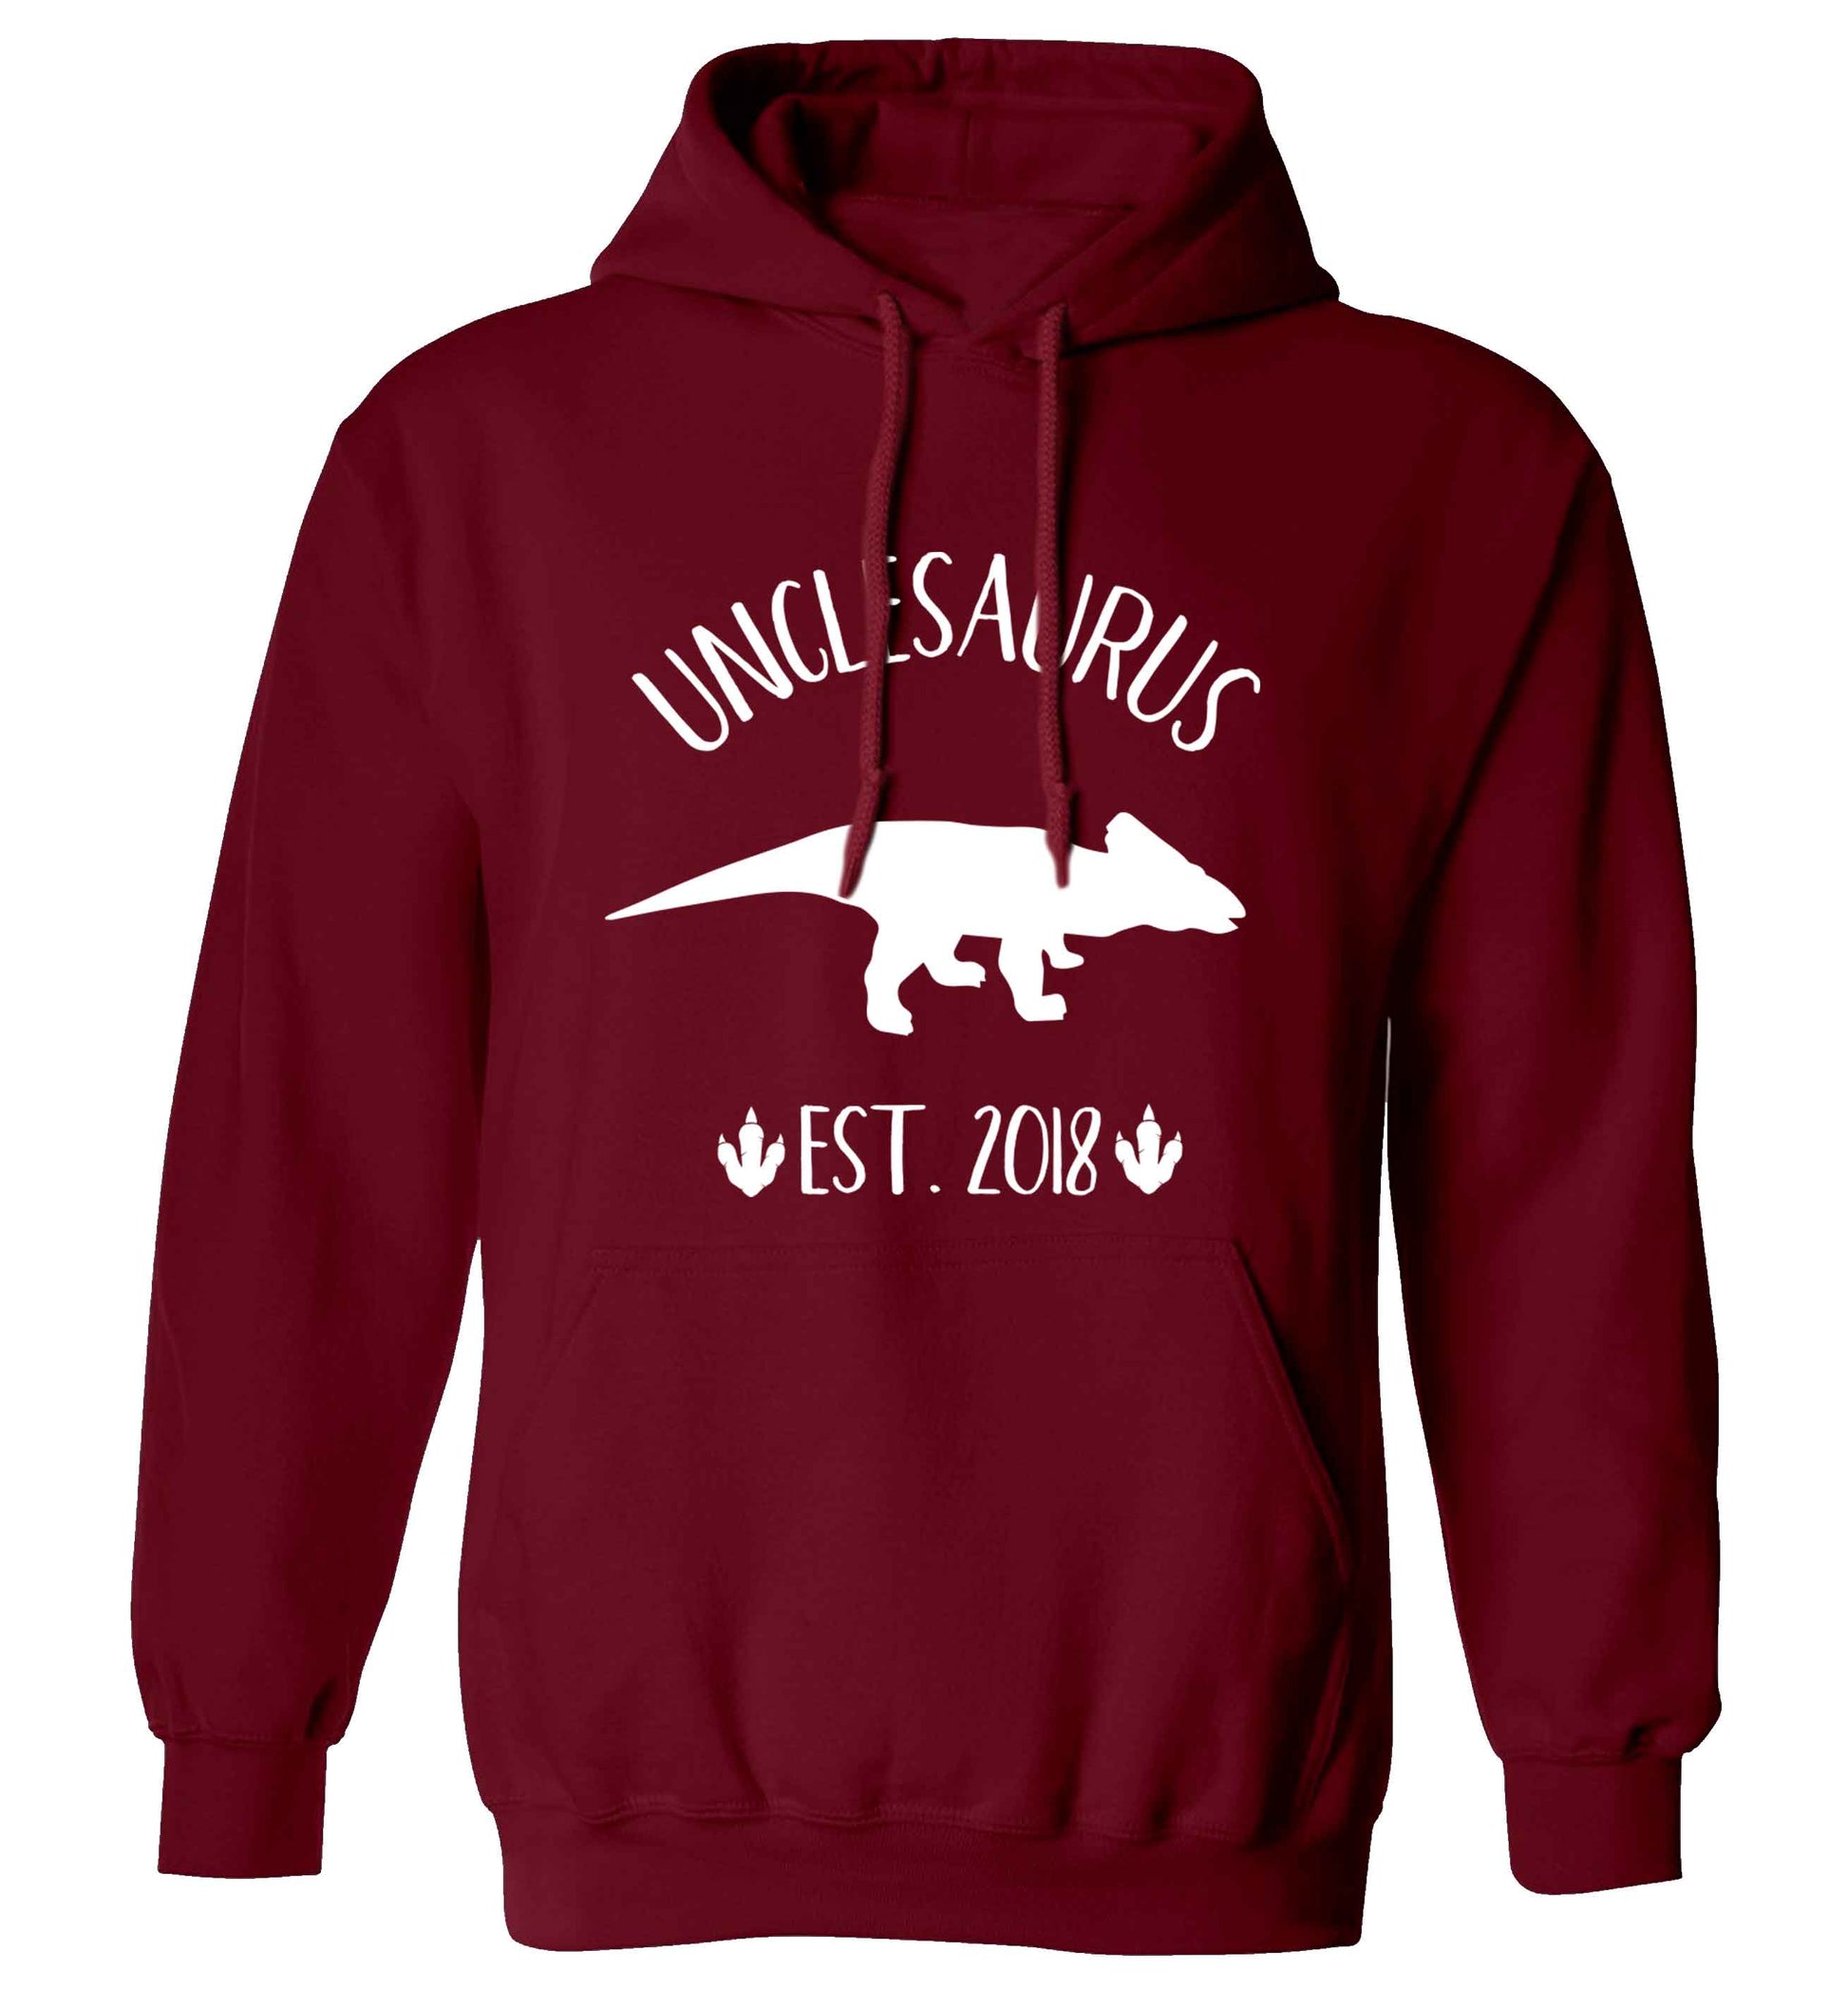 Personalised unclesaurus since (custom date) adults unisex maroon hoodie 2XL